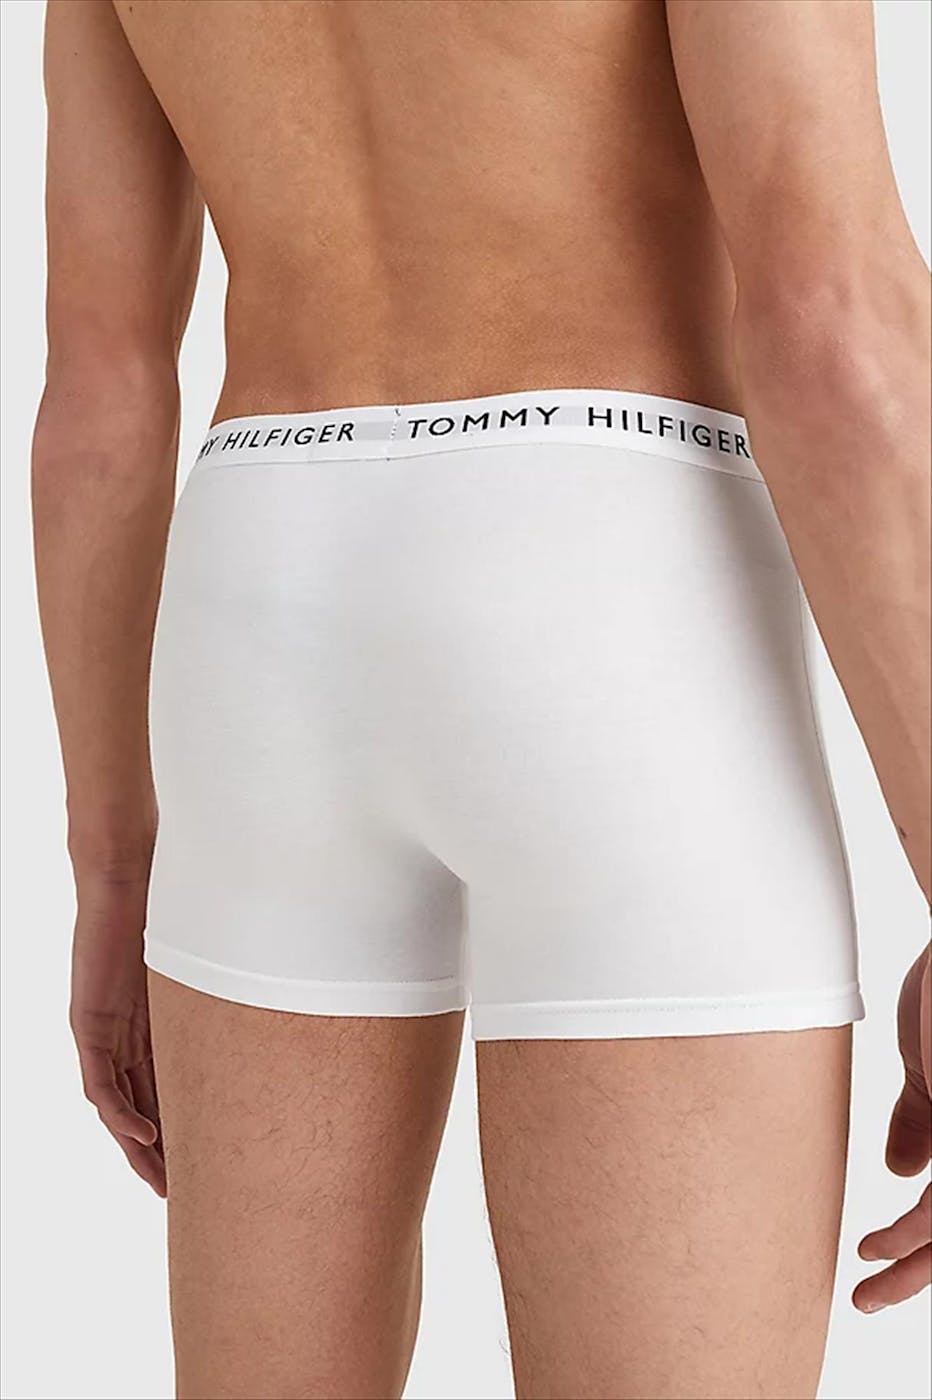 Tommy Hilfiger Underwear - Witte 3-pack Trunk boxershorts